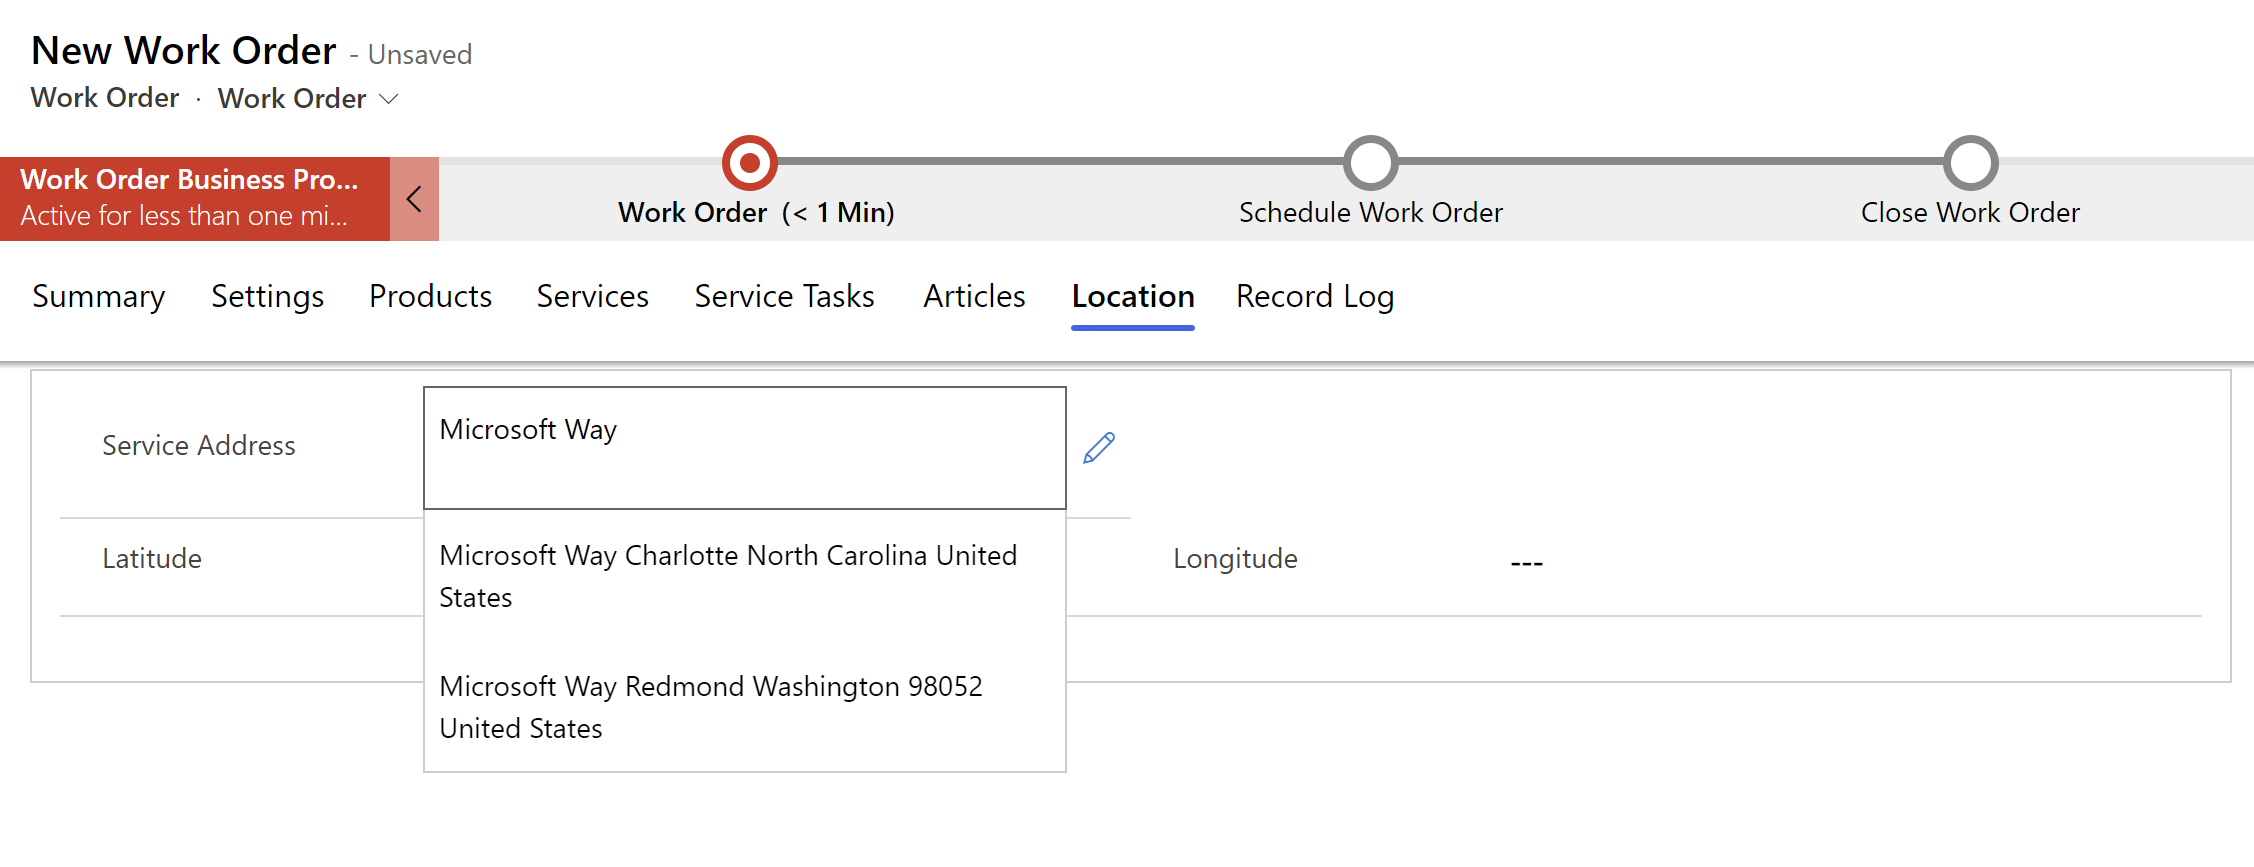 Captura de tela de uma nova ordem de serviço no Field Service, mostrando sugestões de endereço em um menu suspenso.